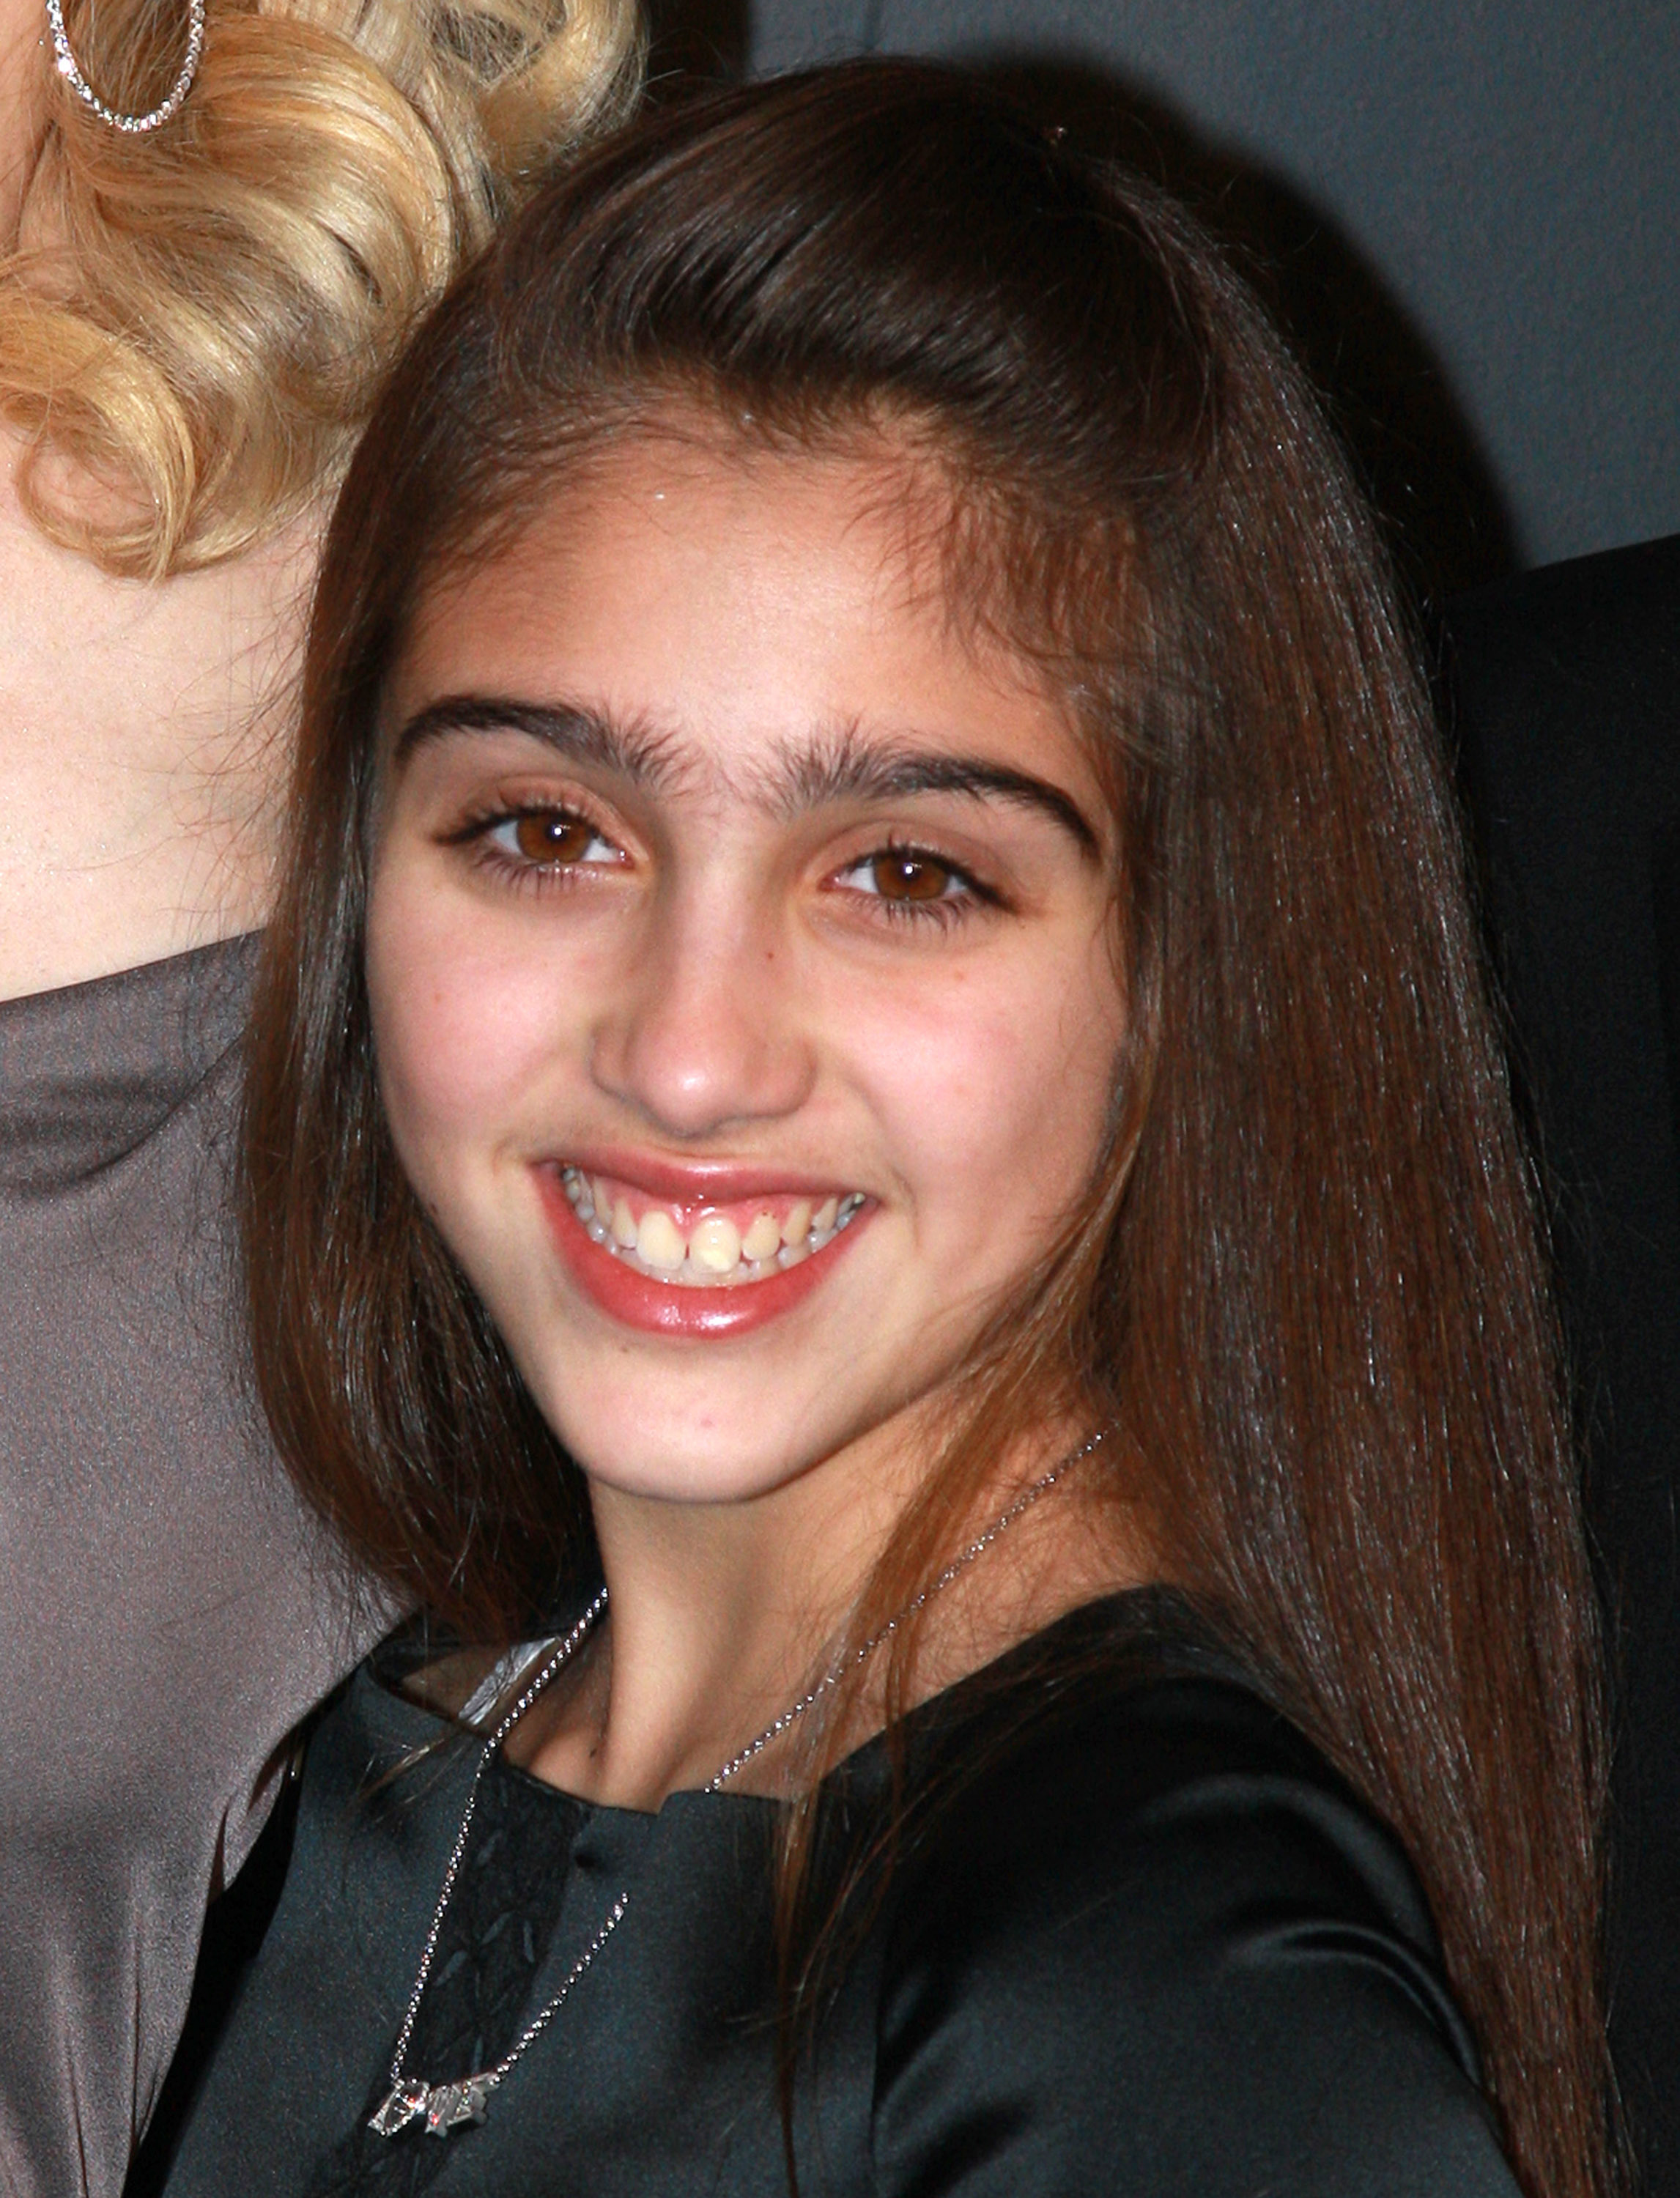 La hija de Madonna, Lourdes "Lola" Leon, el 6 de febrero de 2008 en Nueva York | Foto: Getty Images